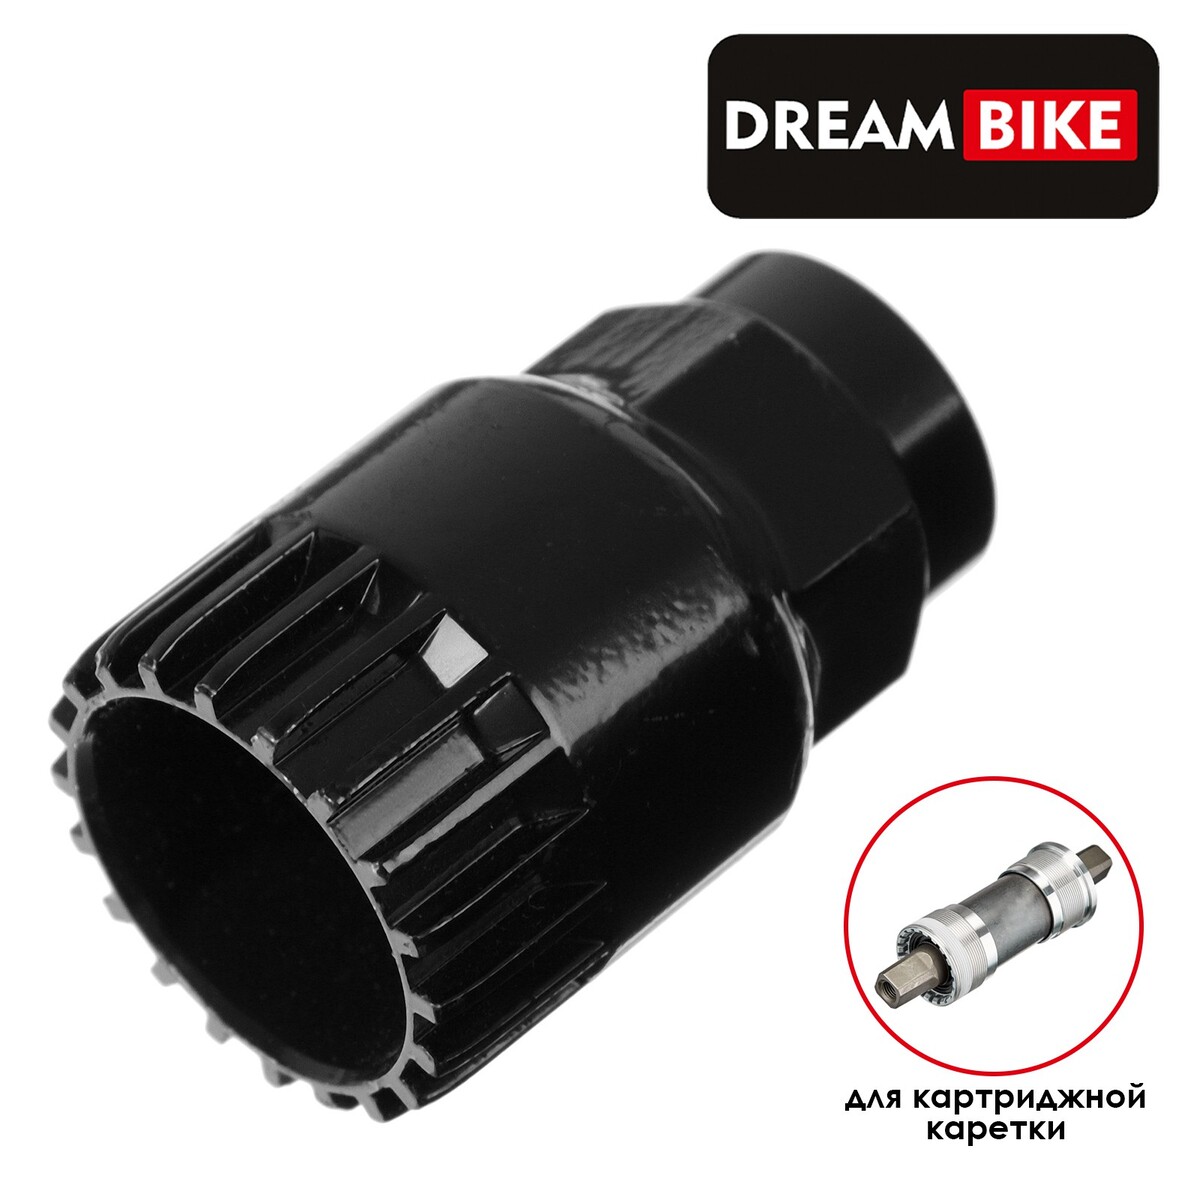 Съемник каретки dream bike gj-022-1